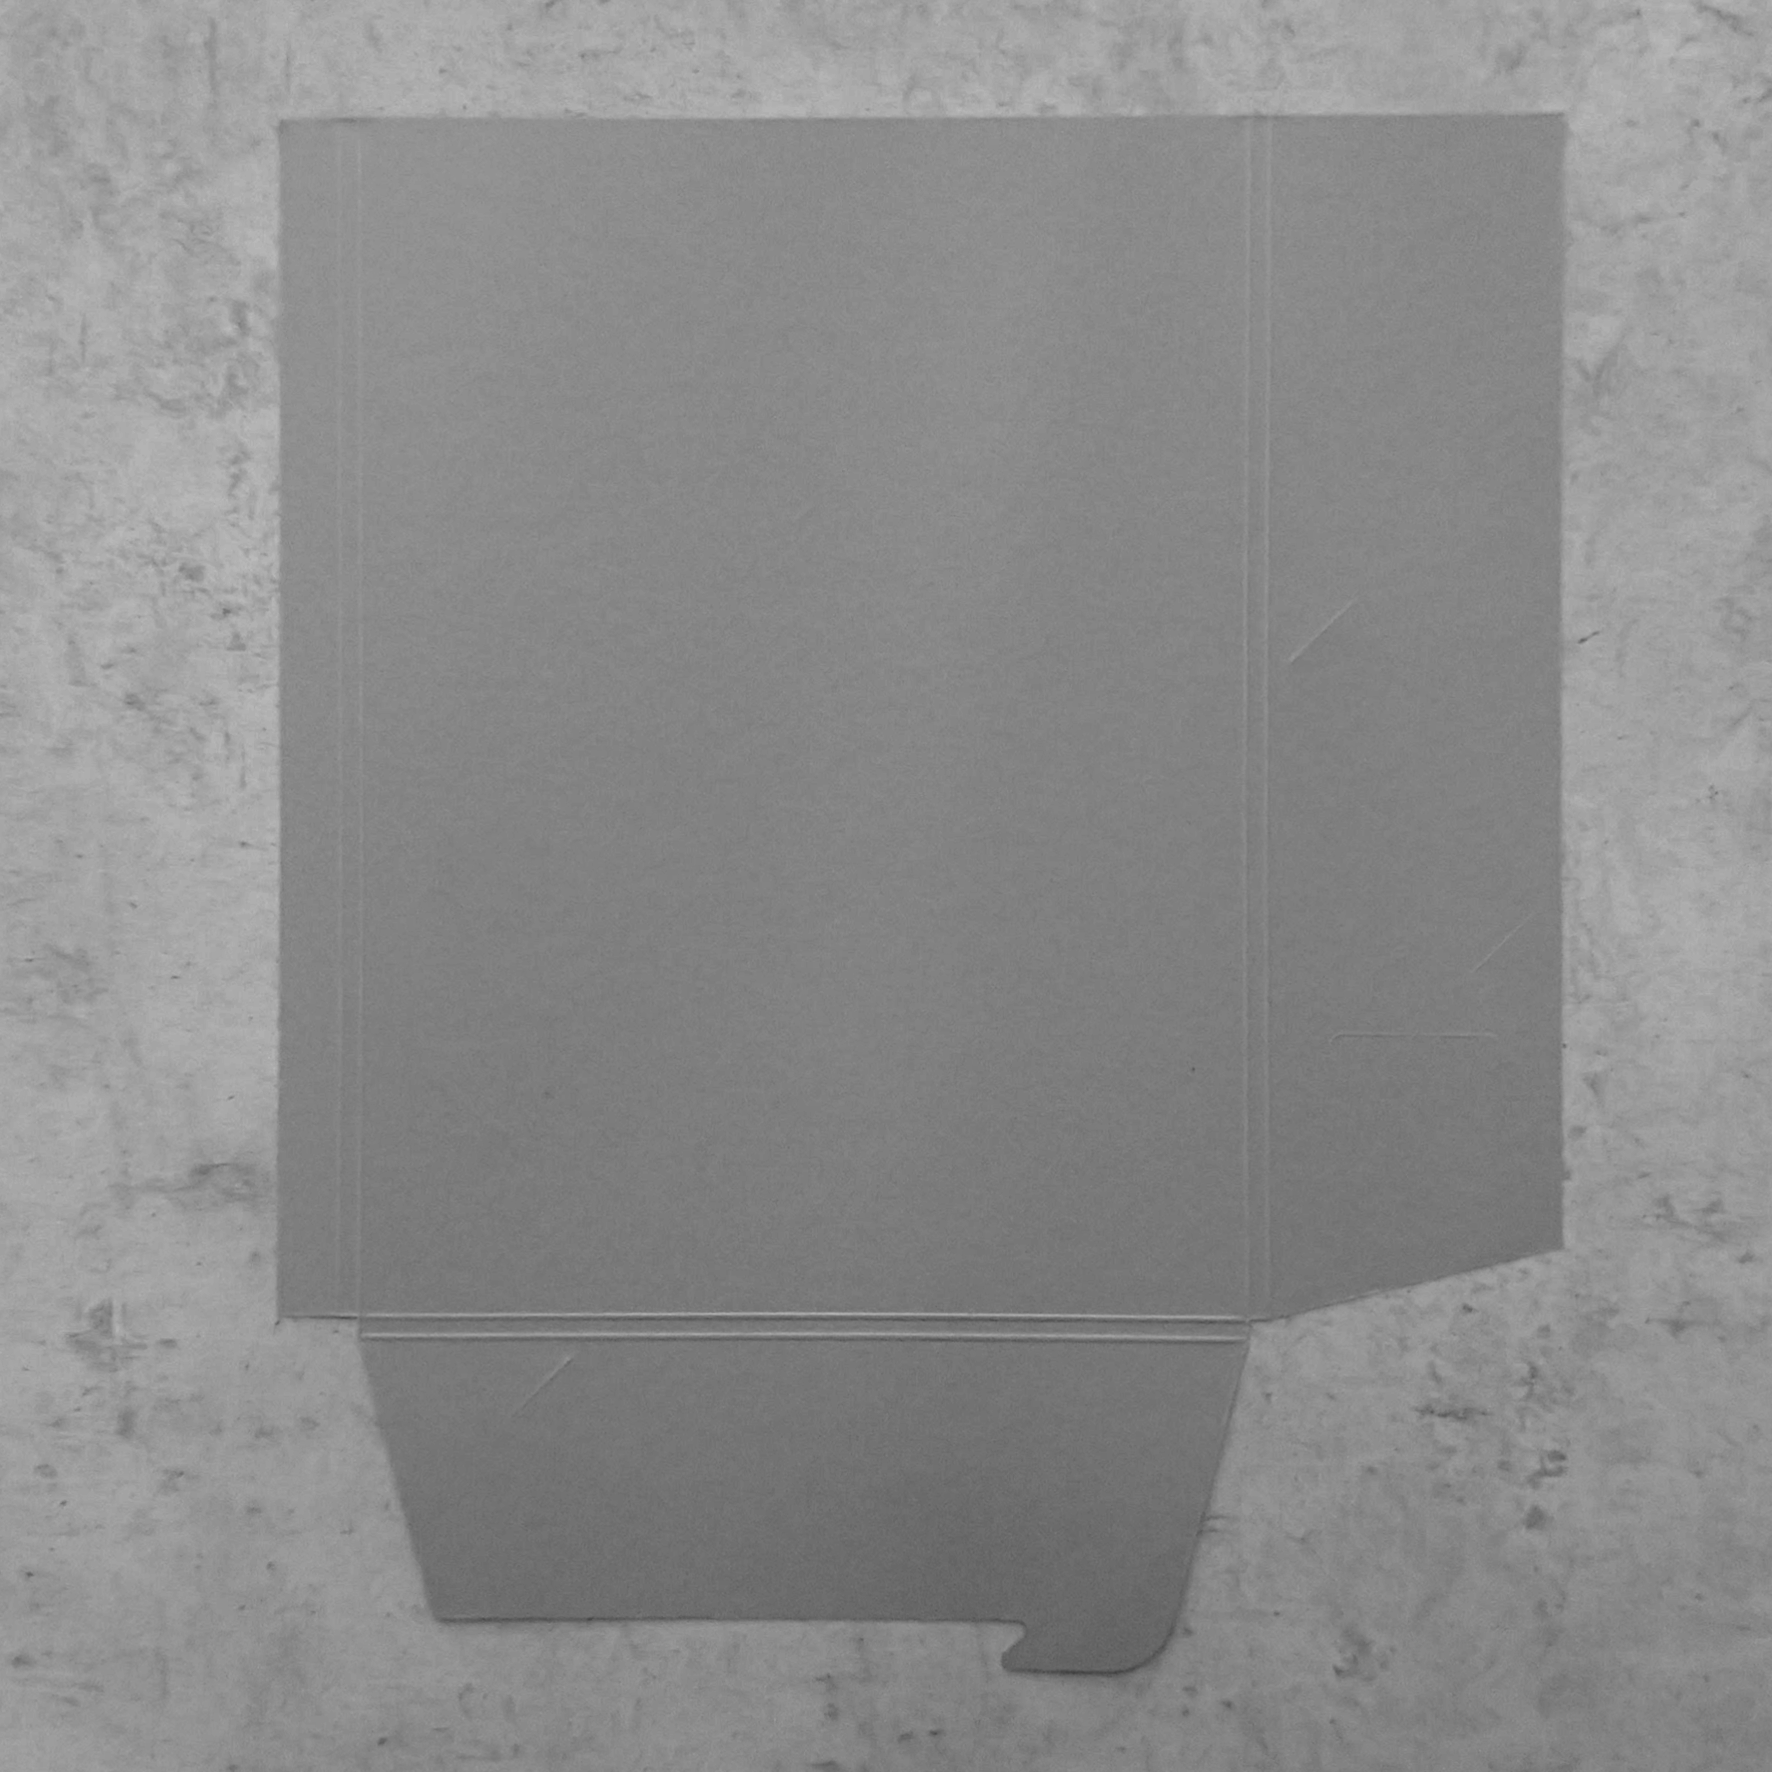 Korpus slohy – dvě klopy + zámeček, šedý matný papír